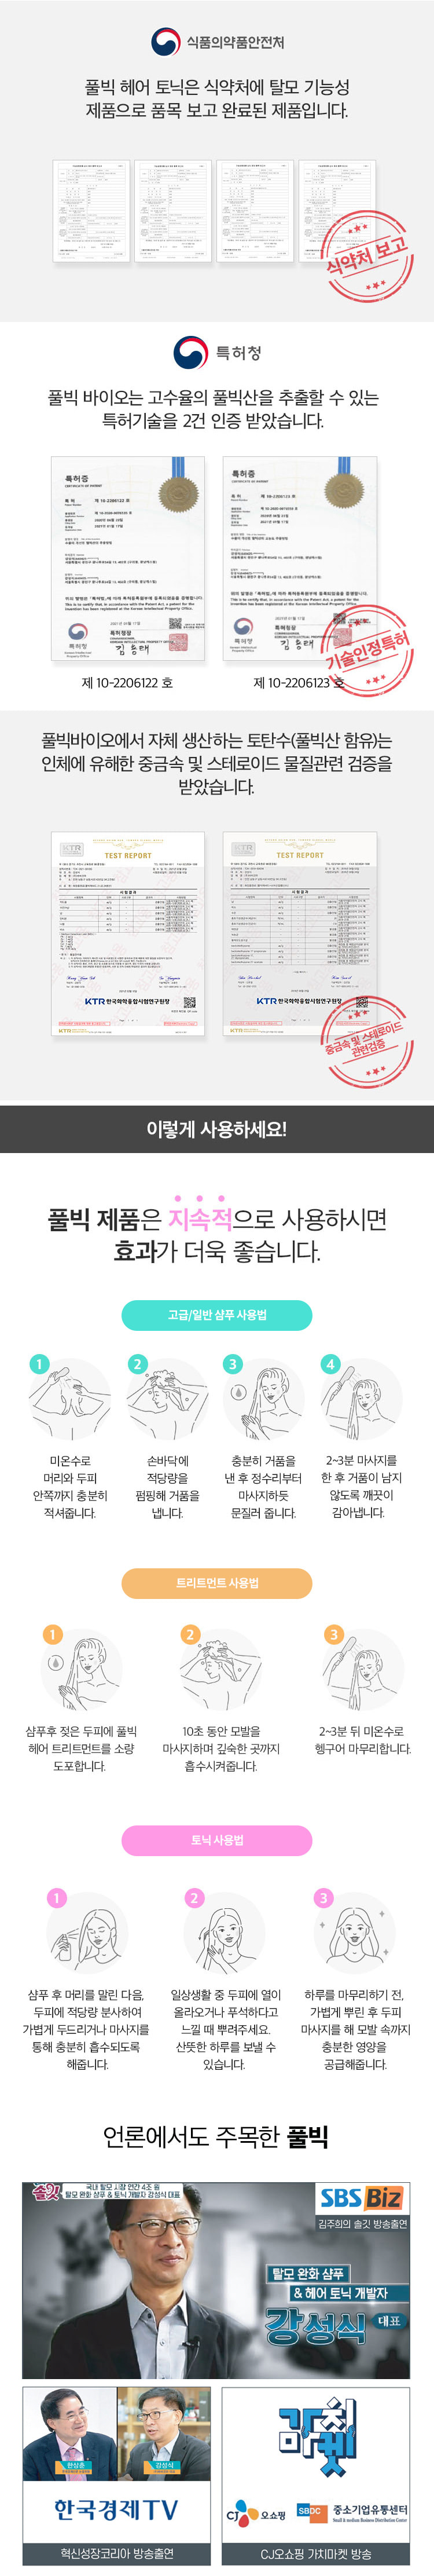 풀빅샴푸 전광렬샴푸 강성식대표 김주희솔깃 풀빅산샴푸 CF